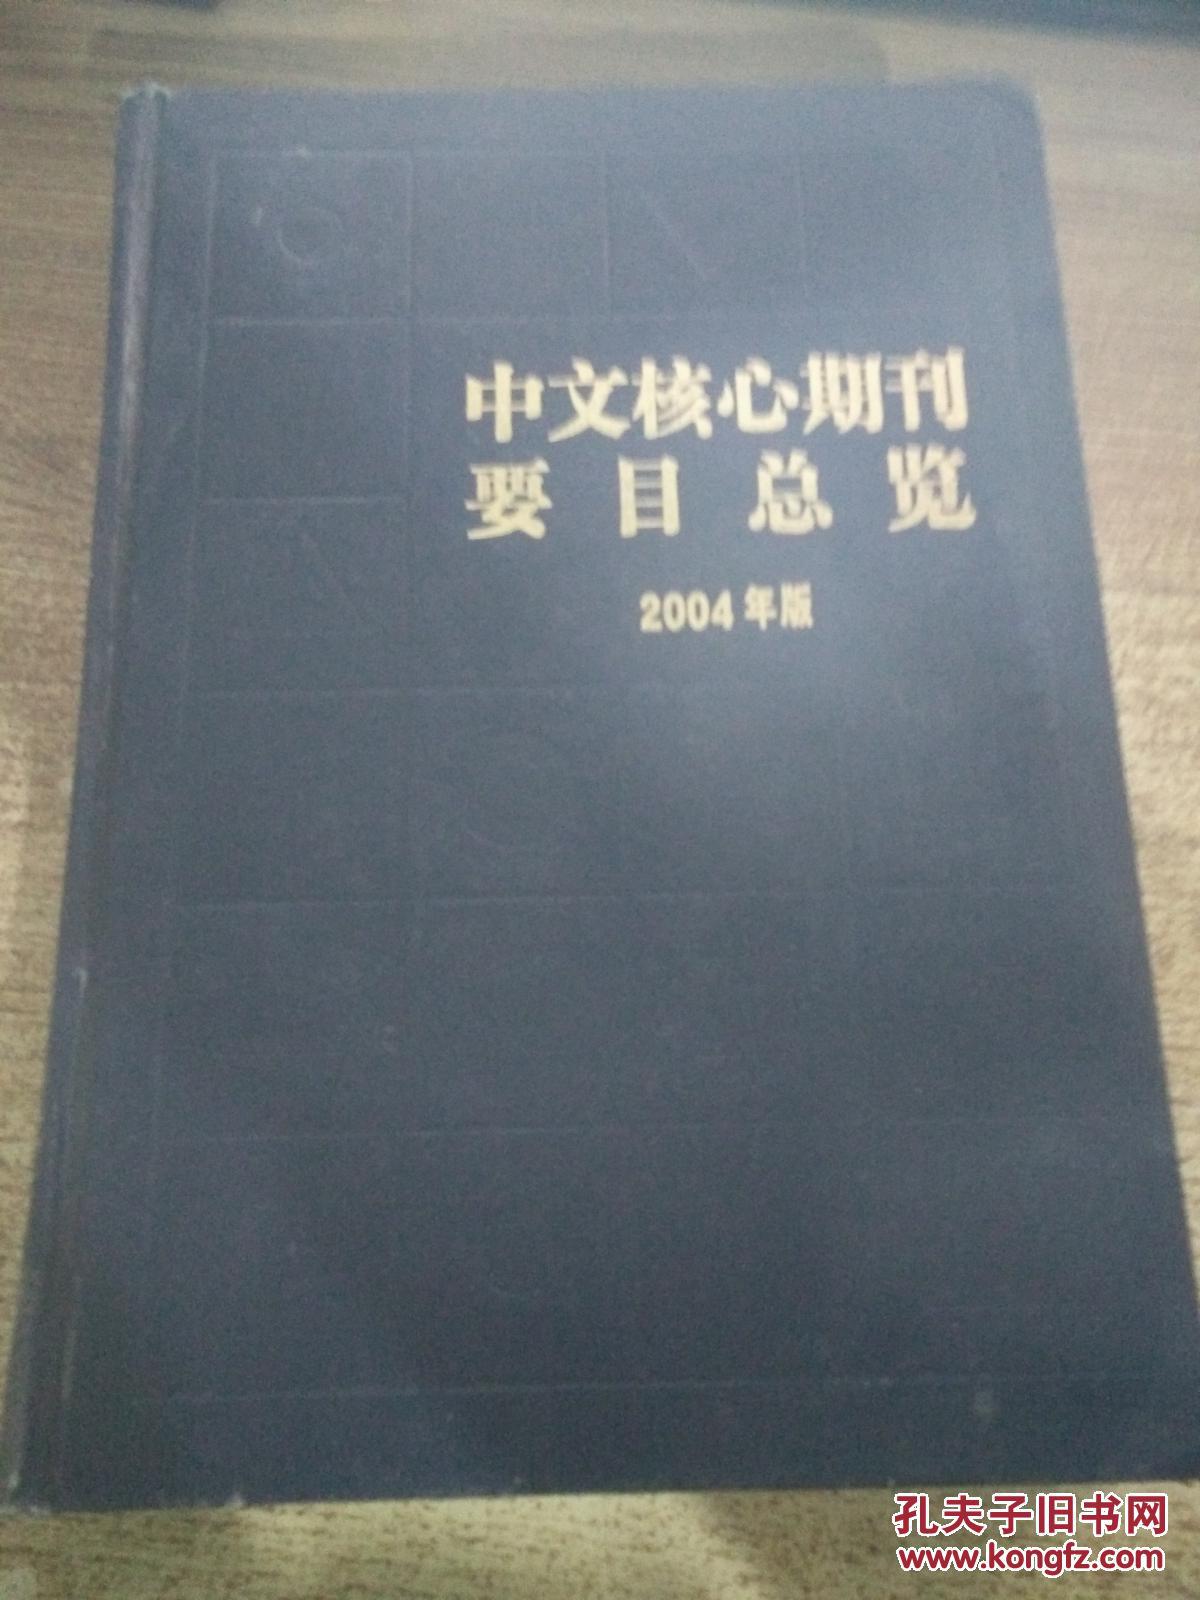 【图】中文核心期刊要目总览 2004年版 第四版